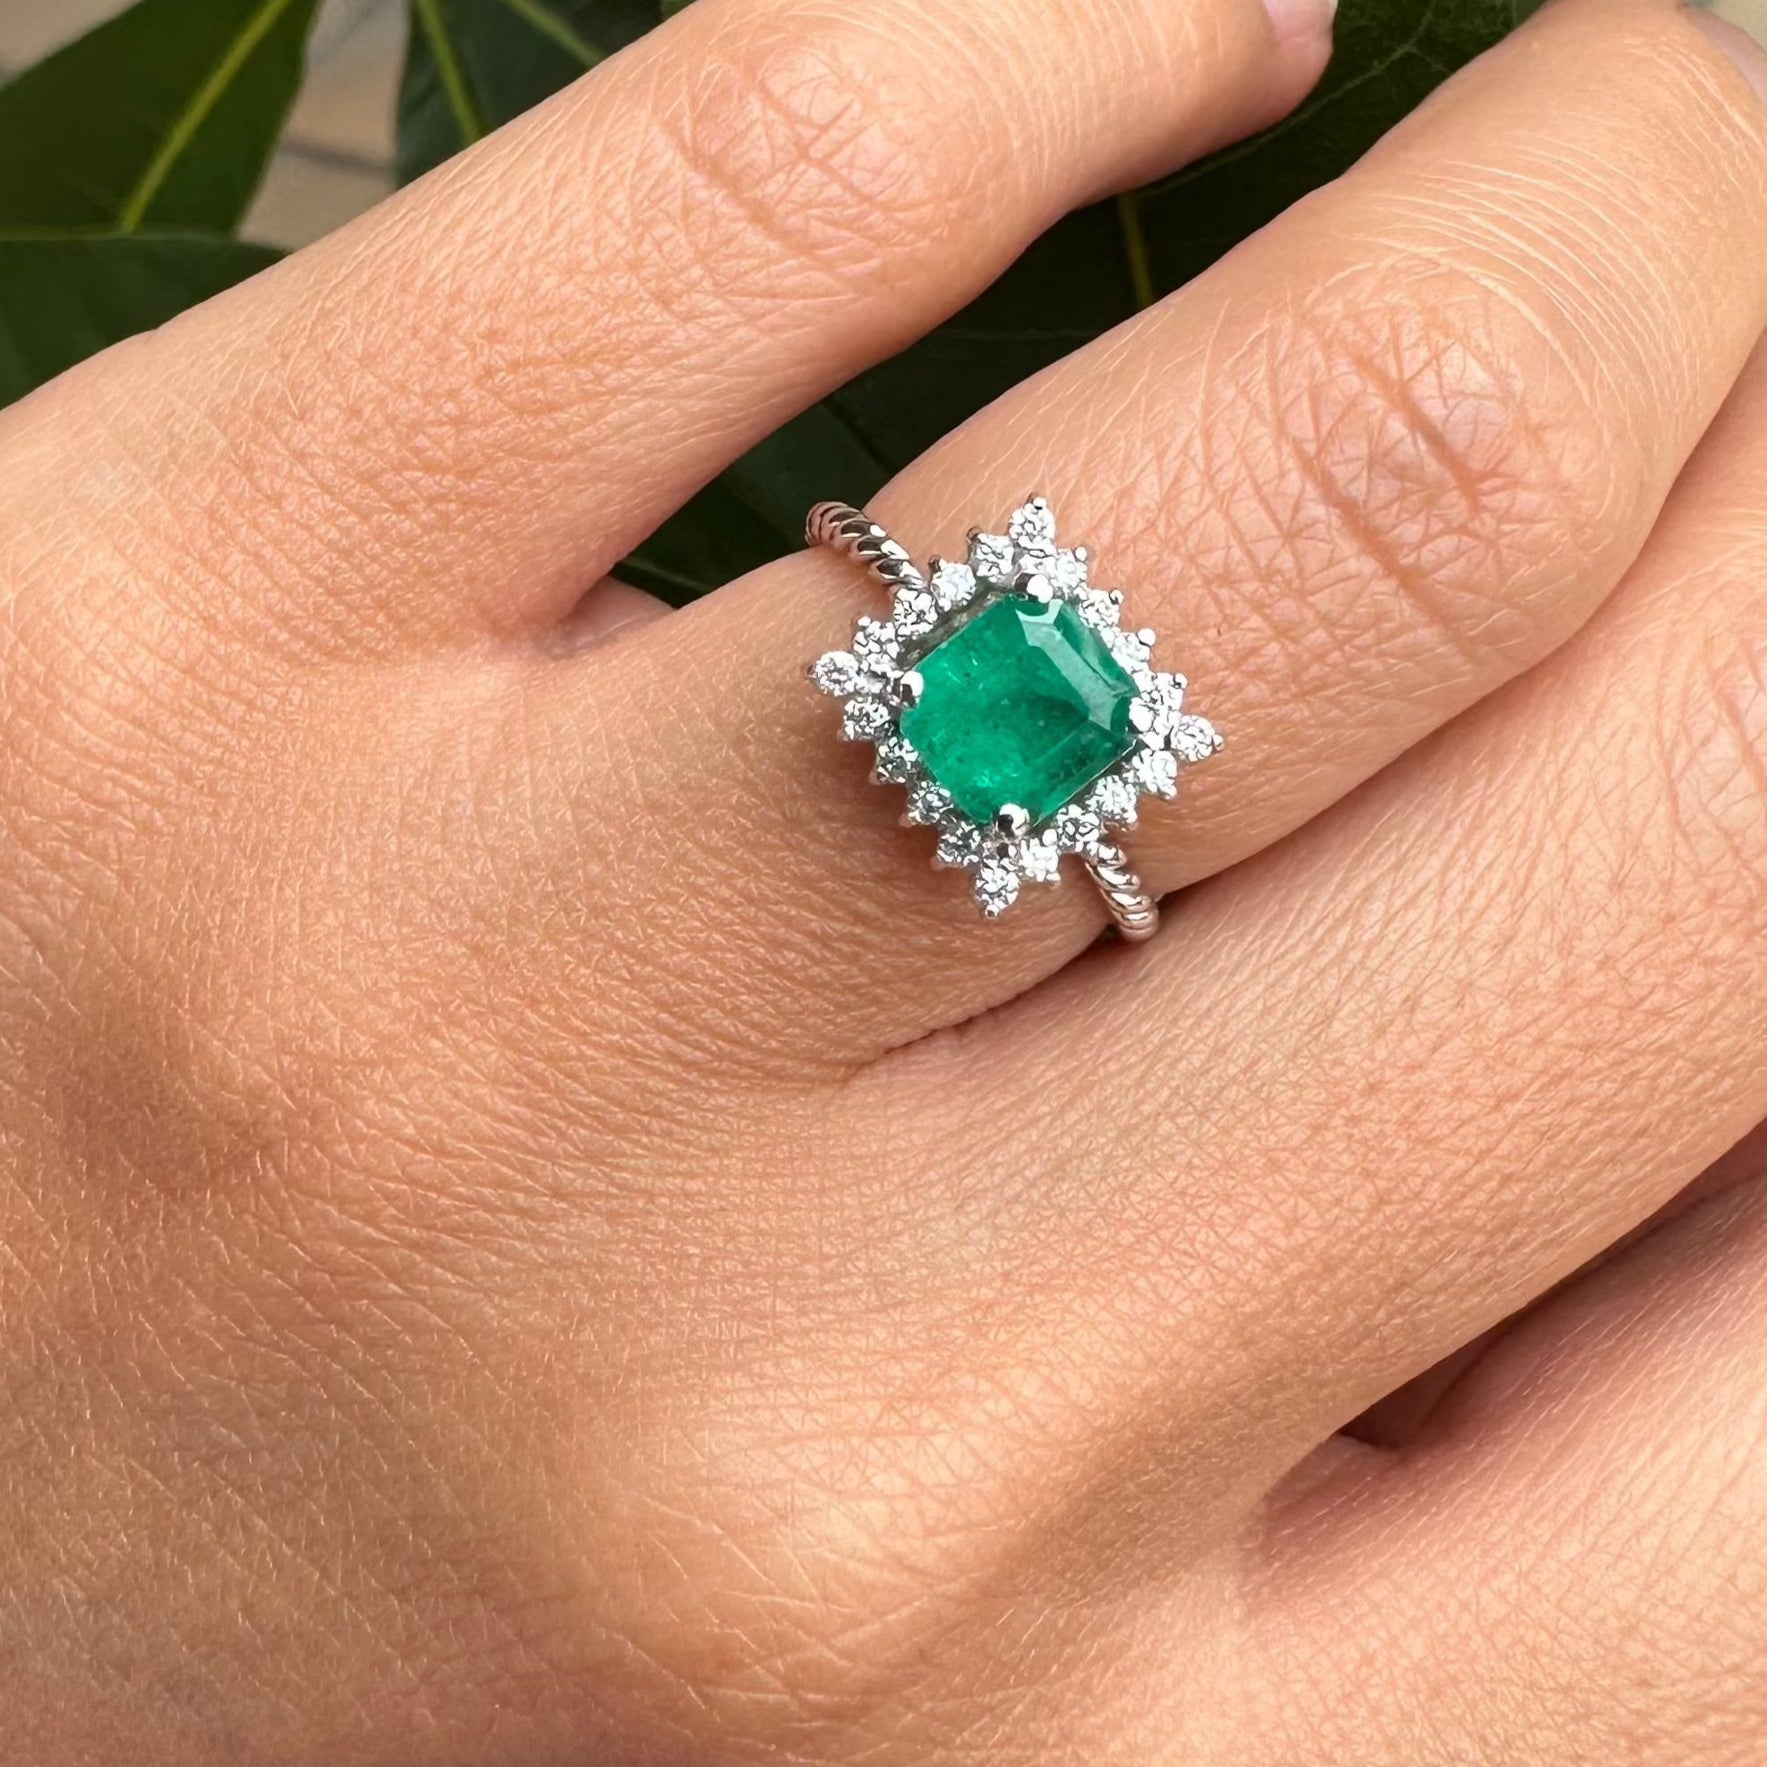 La sortija Modelo CALI es un anillo de esmeralda con diamantes